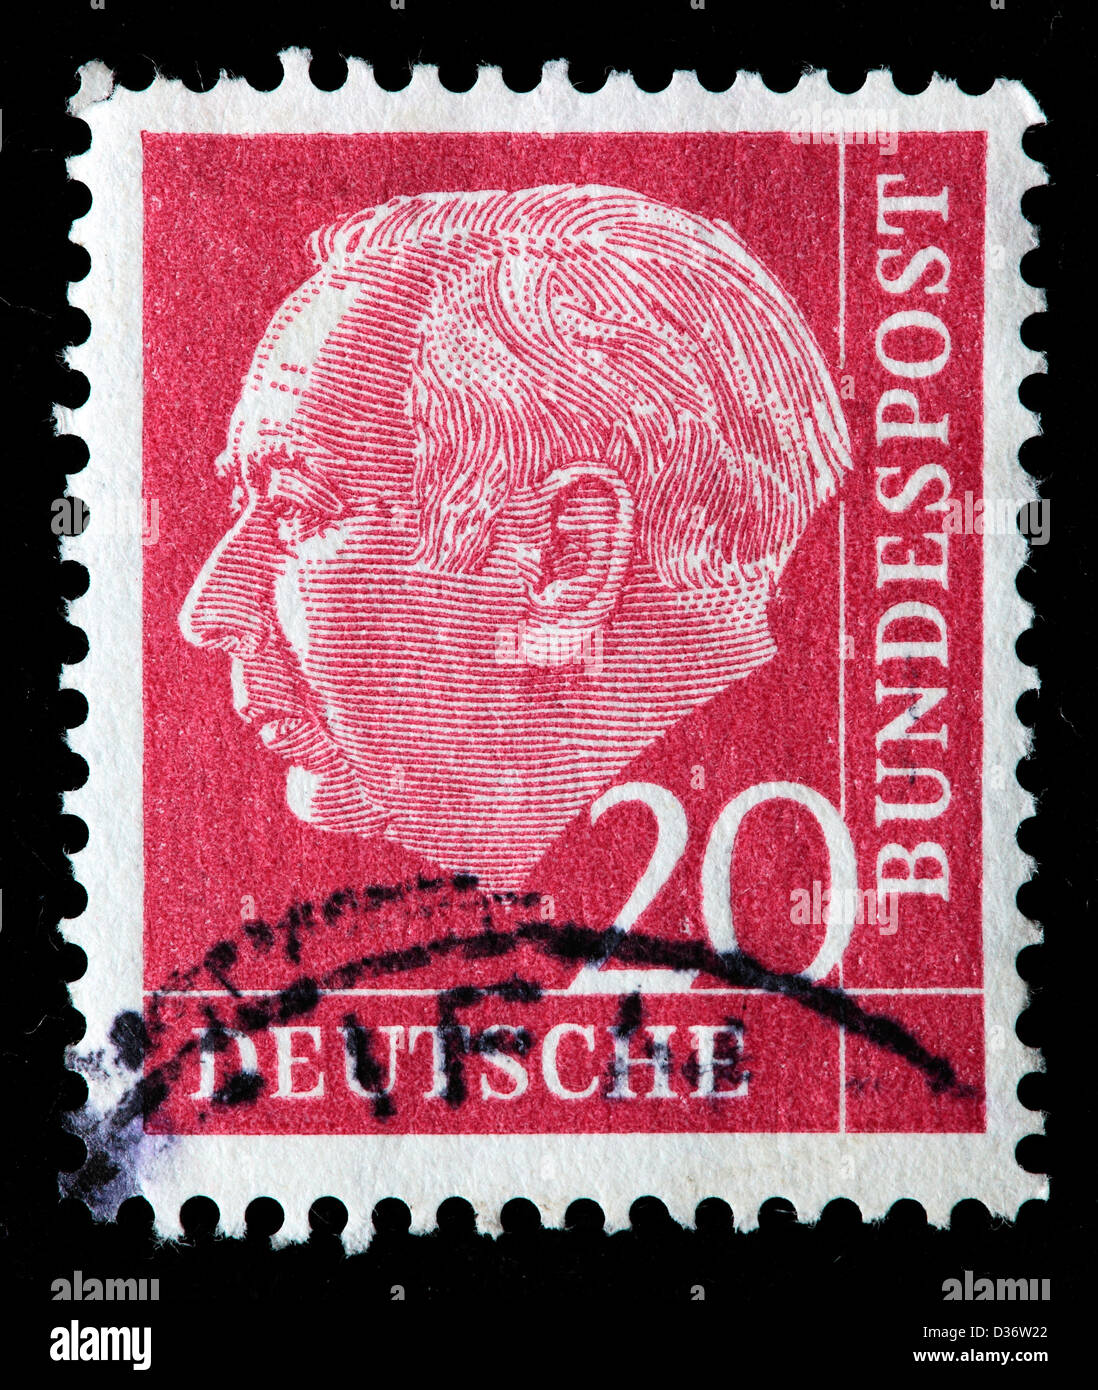 Präsident Theodor Heuss, Briefmarke, Deutschland, 1954 Stockfoto